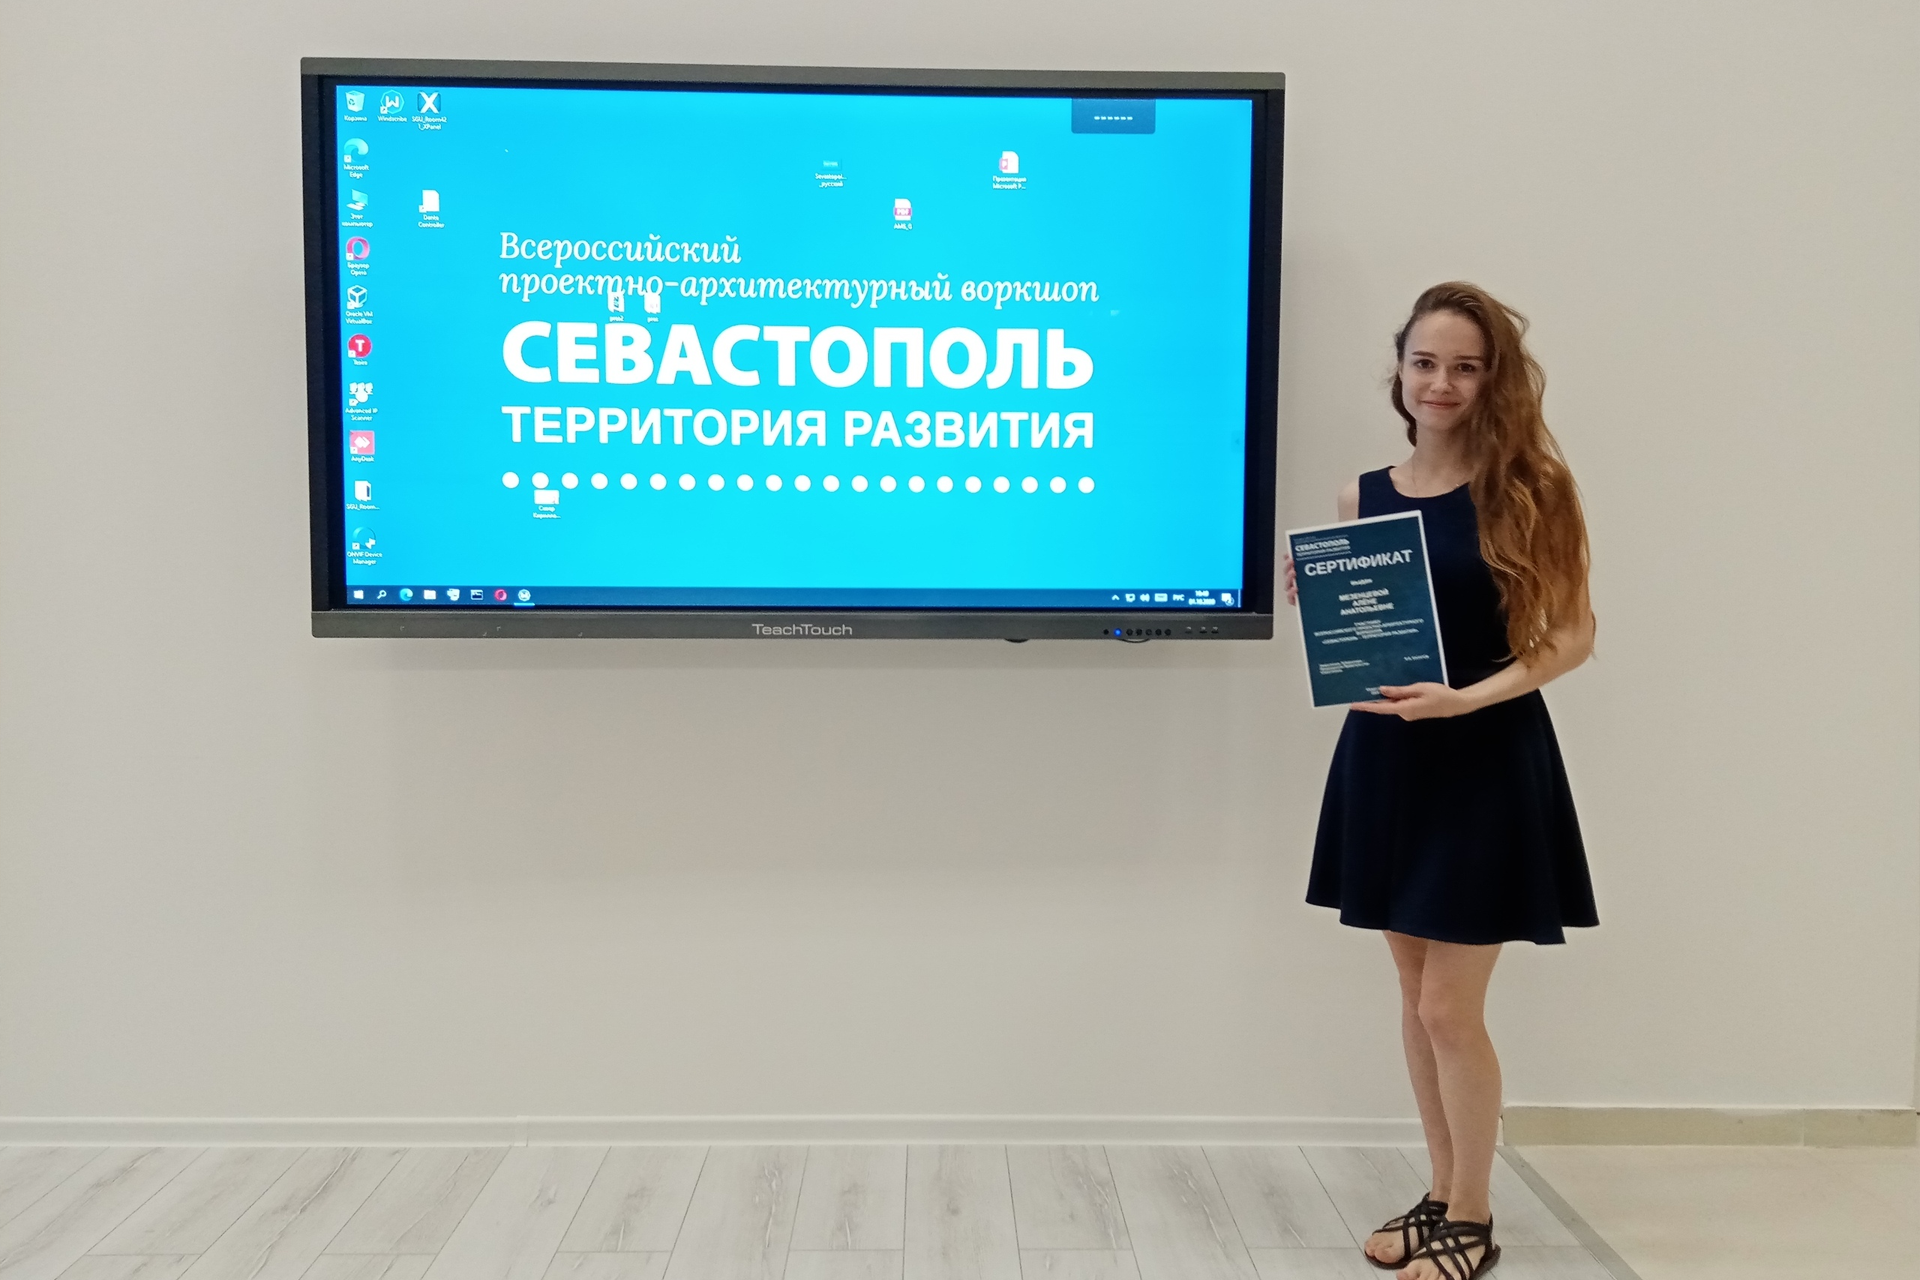 ВятГУ присоединился к разработке проекта по благоустройству городских локаций Севастополя